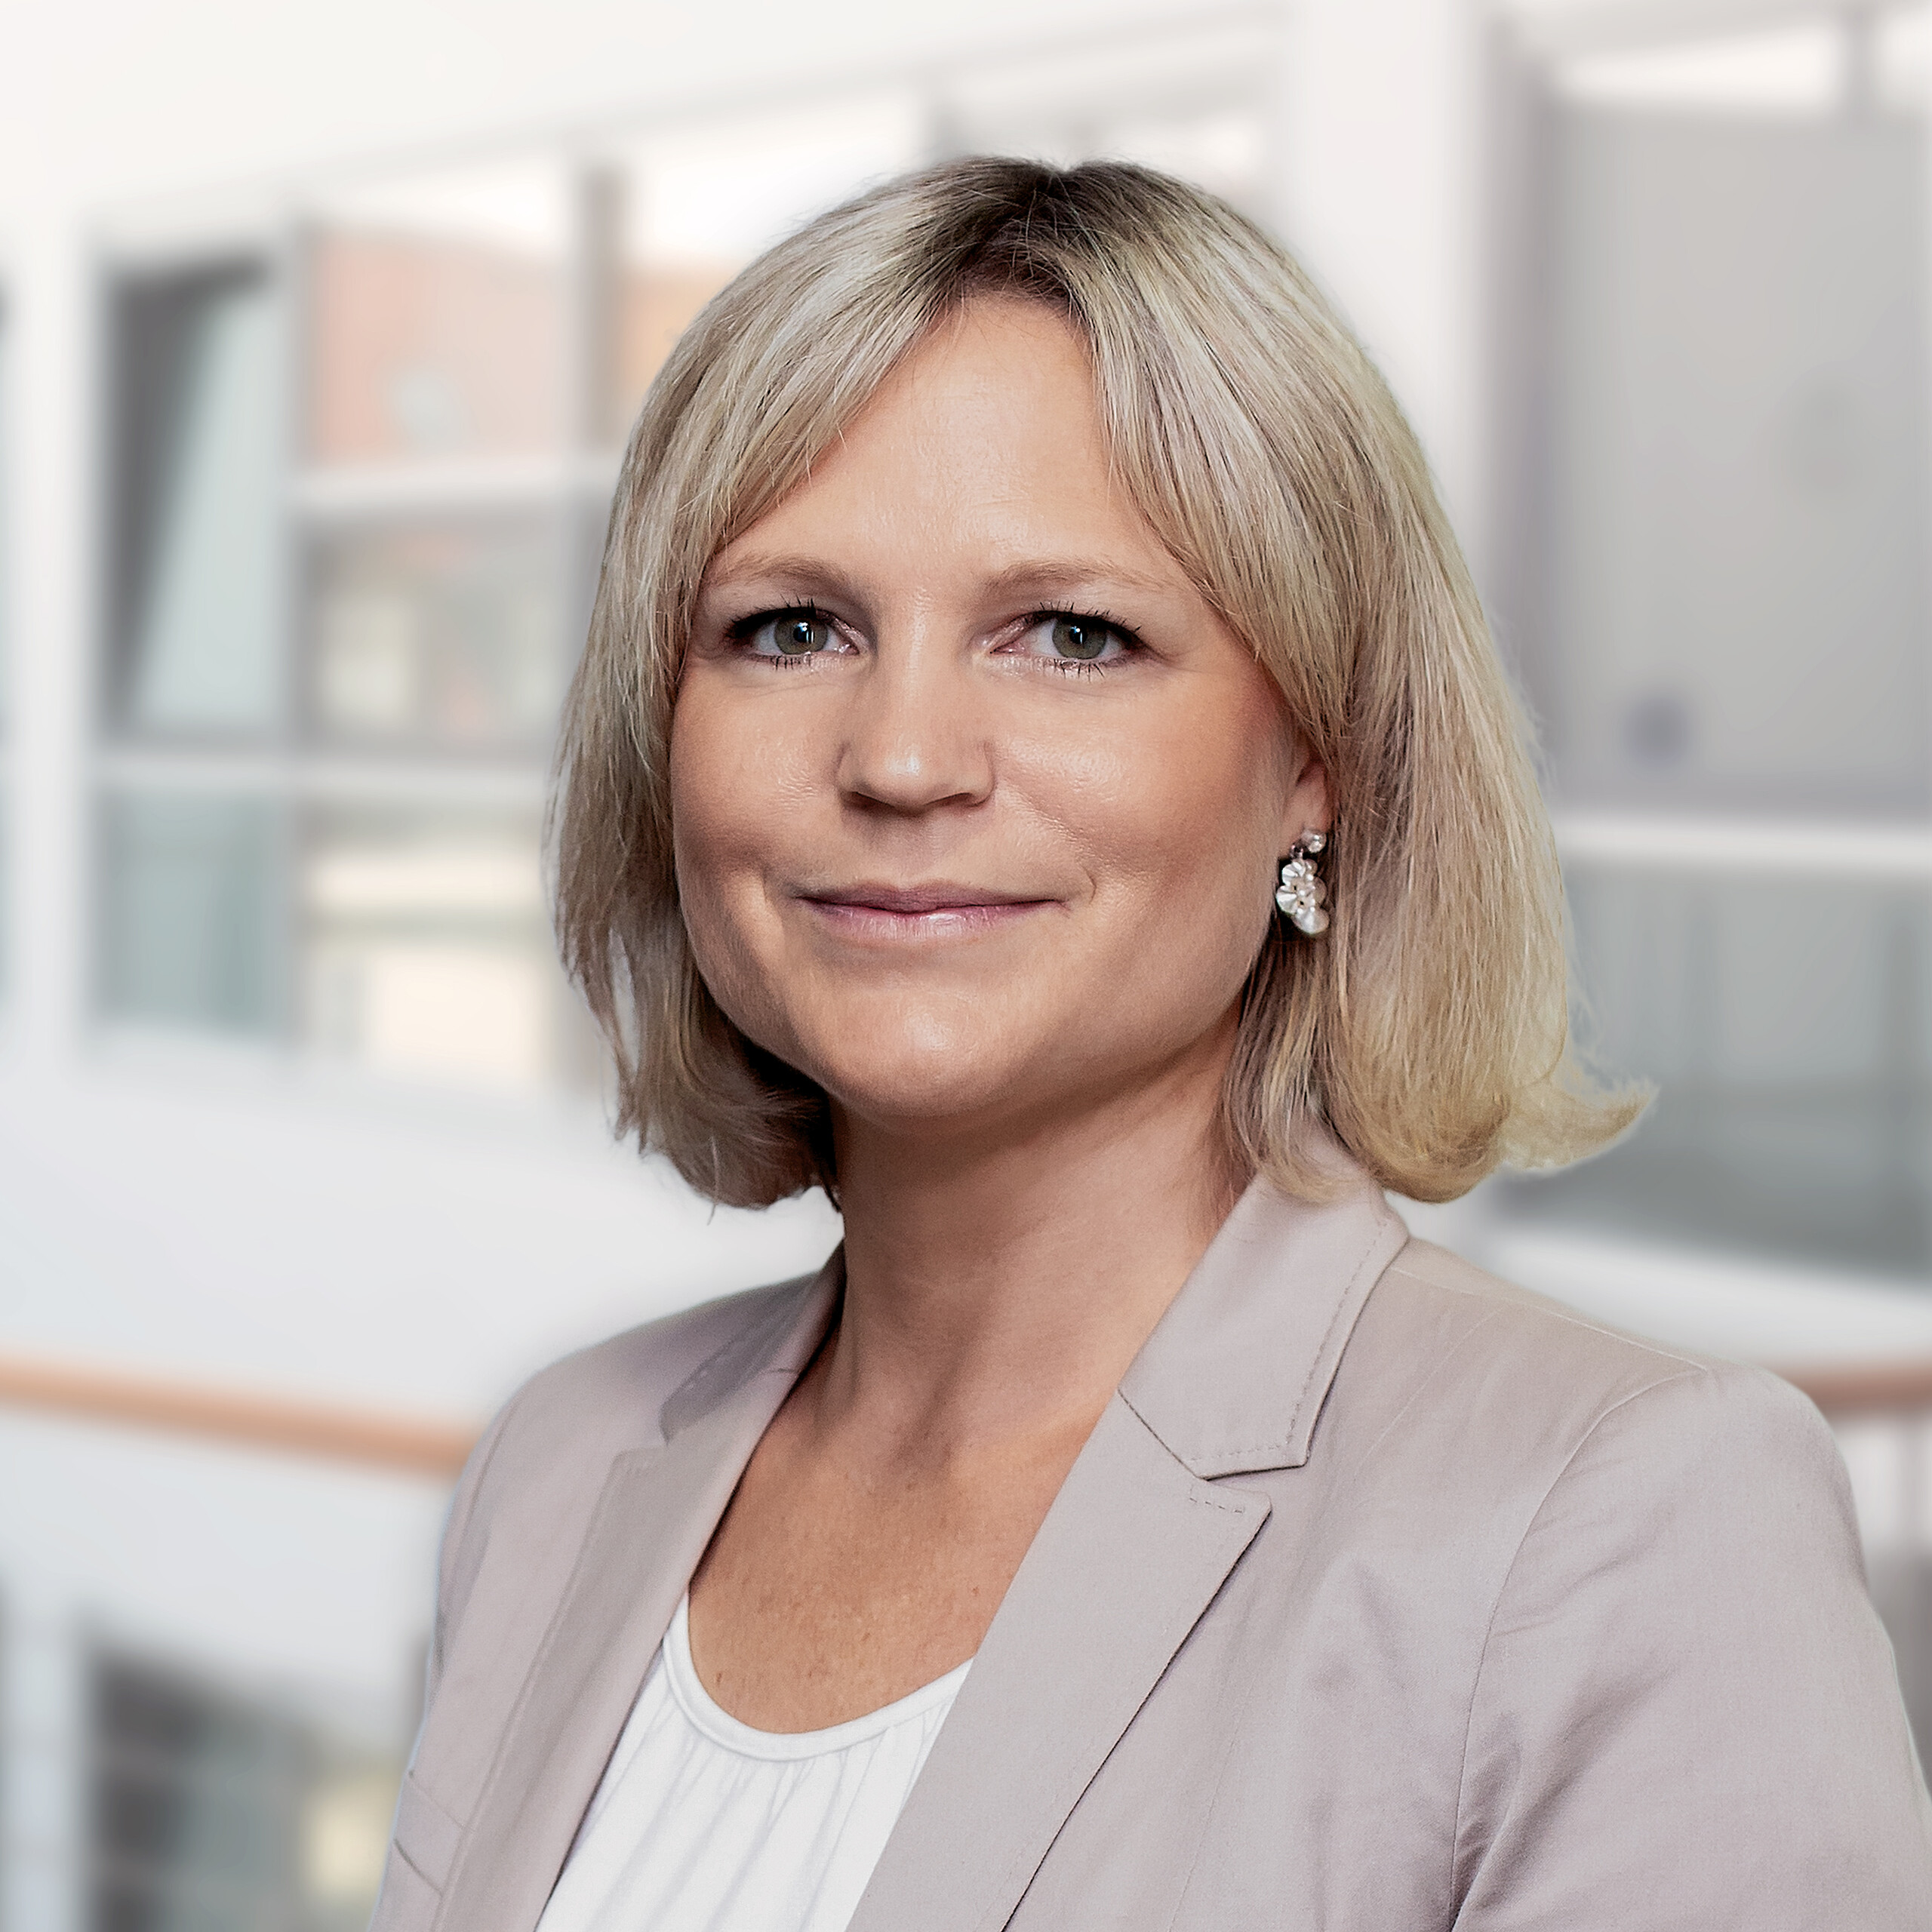 Annette Kröger, CEO North & Central Europe bei Allianz Real Estate